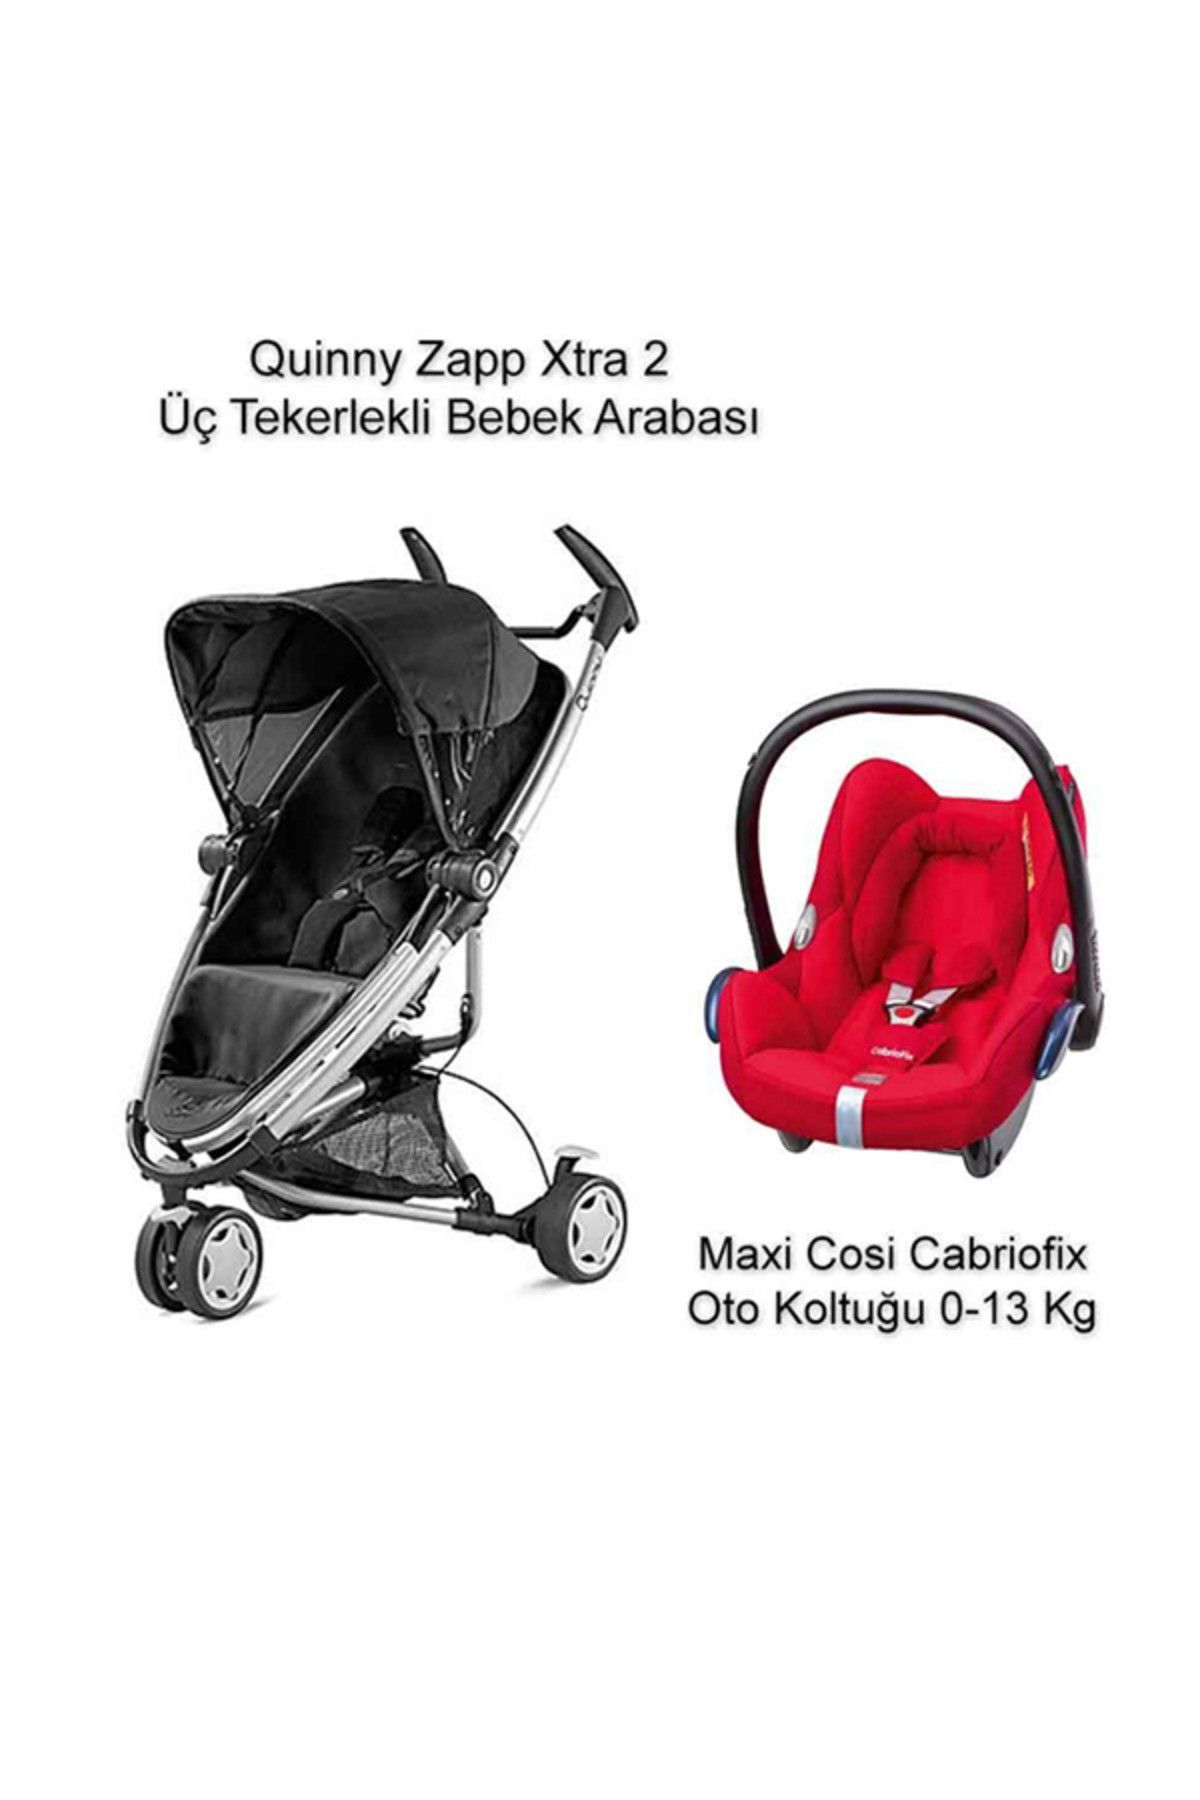 Quinny Zapp Xtra 2+Cabriofix Kampanyası Origami Red /